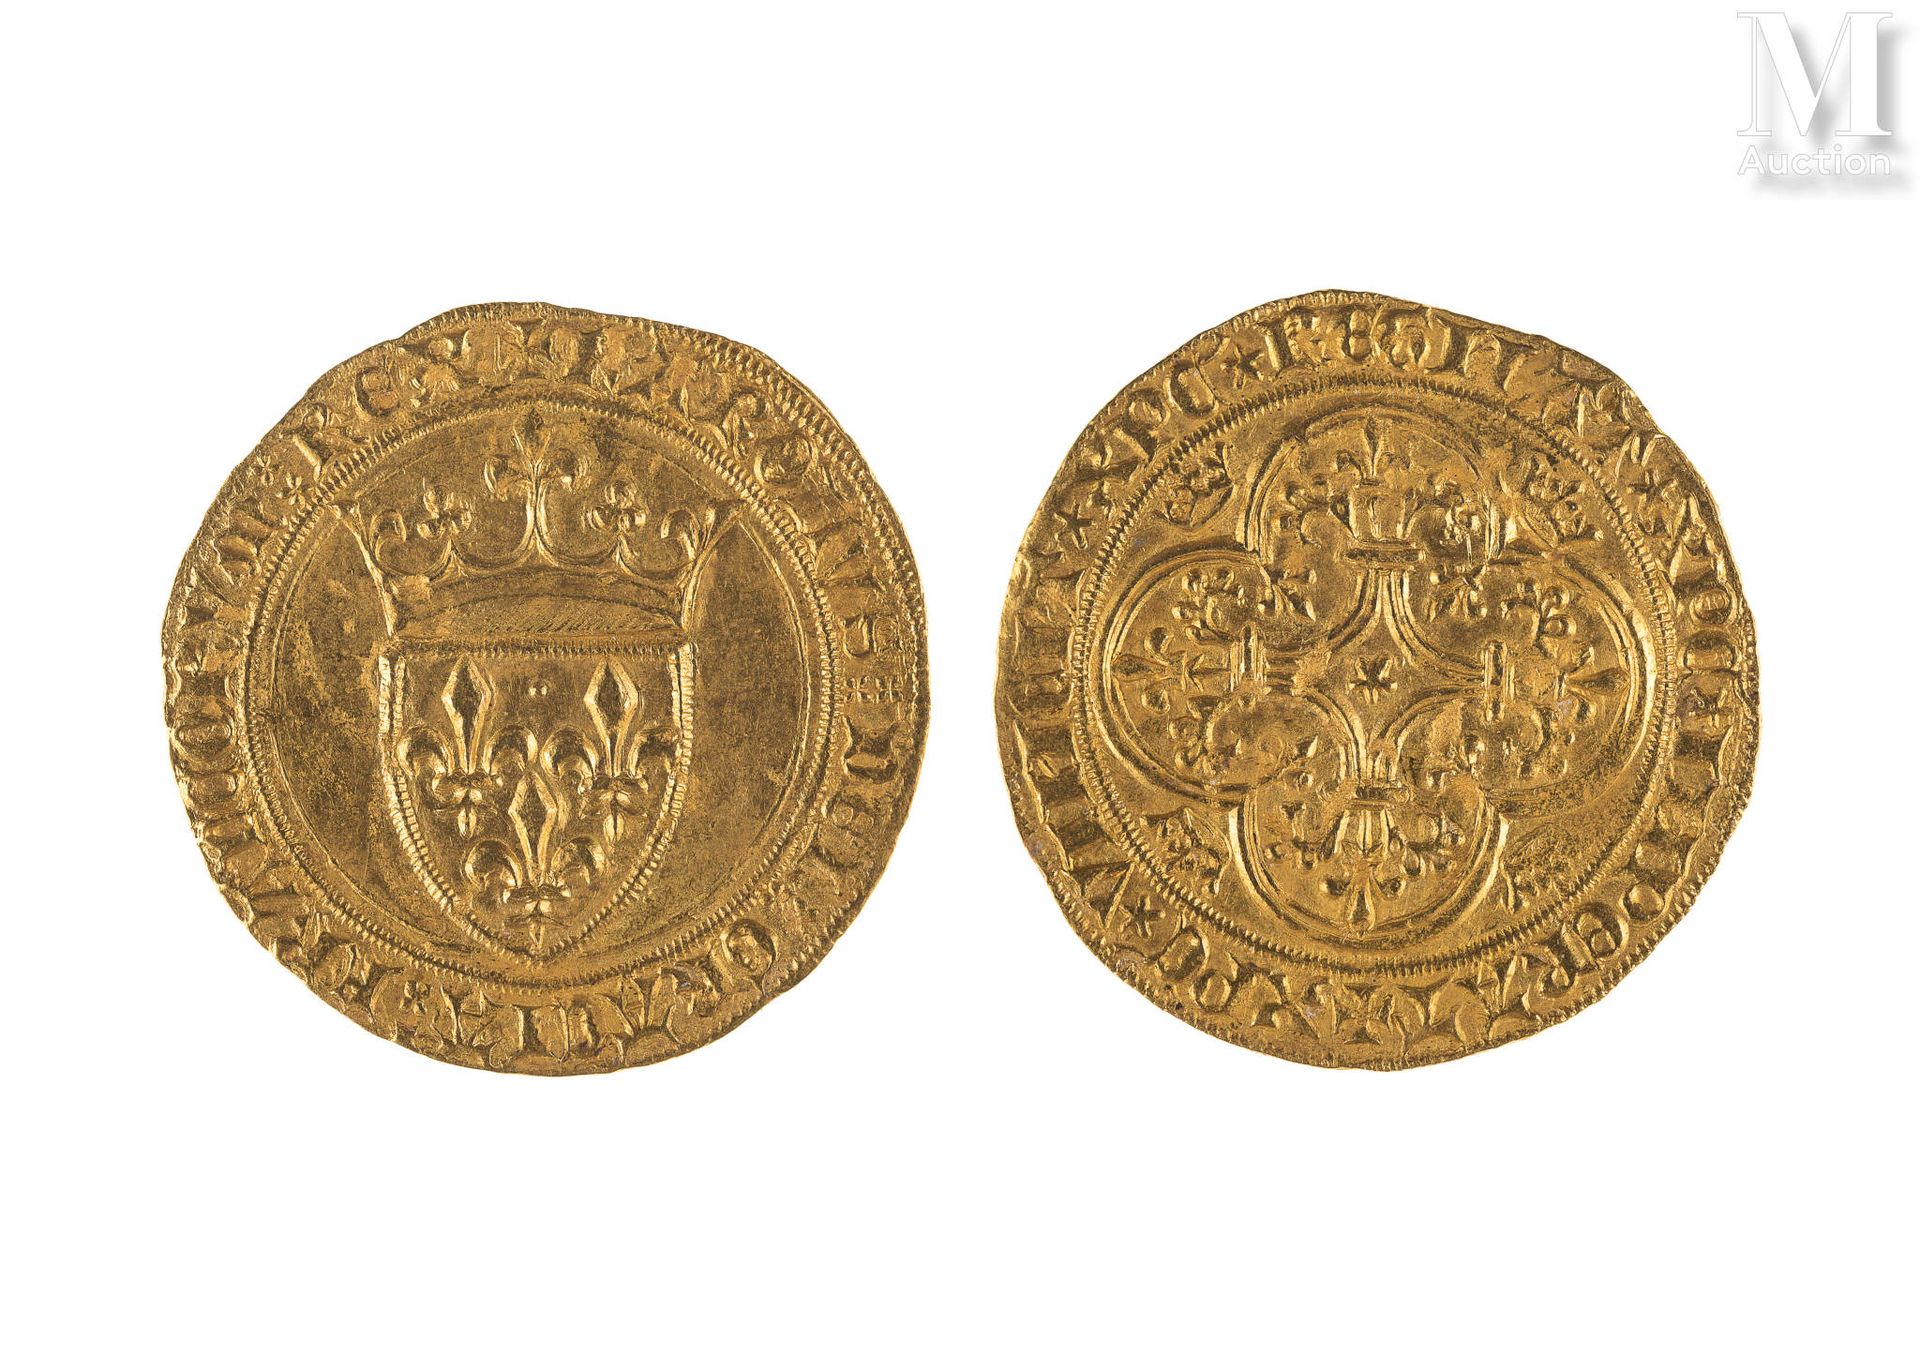 France - Charles VI (1380-1422) Ecu d'or à la couronne
A : Ecu de France couronn&hellip;